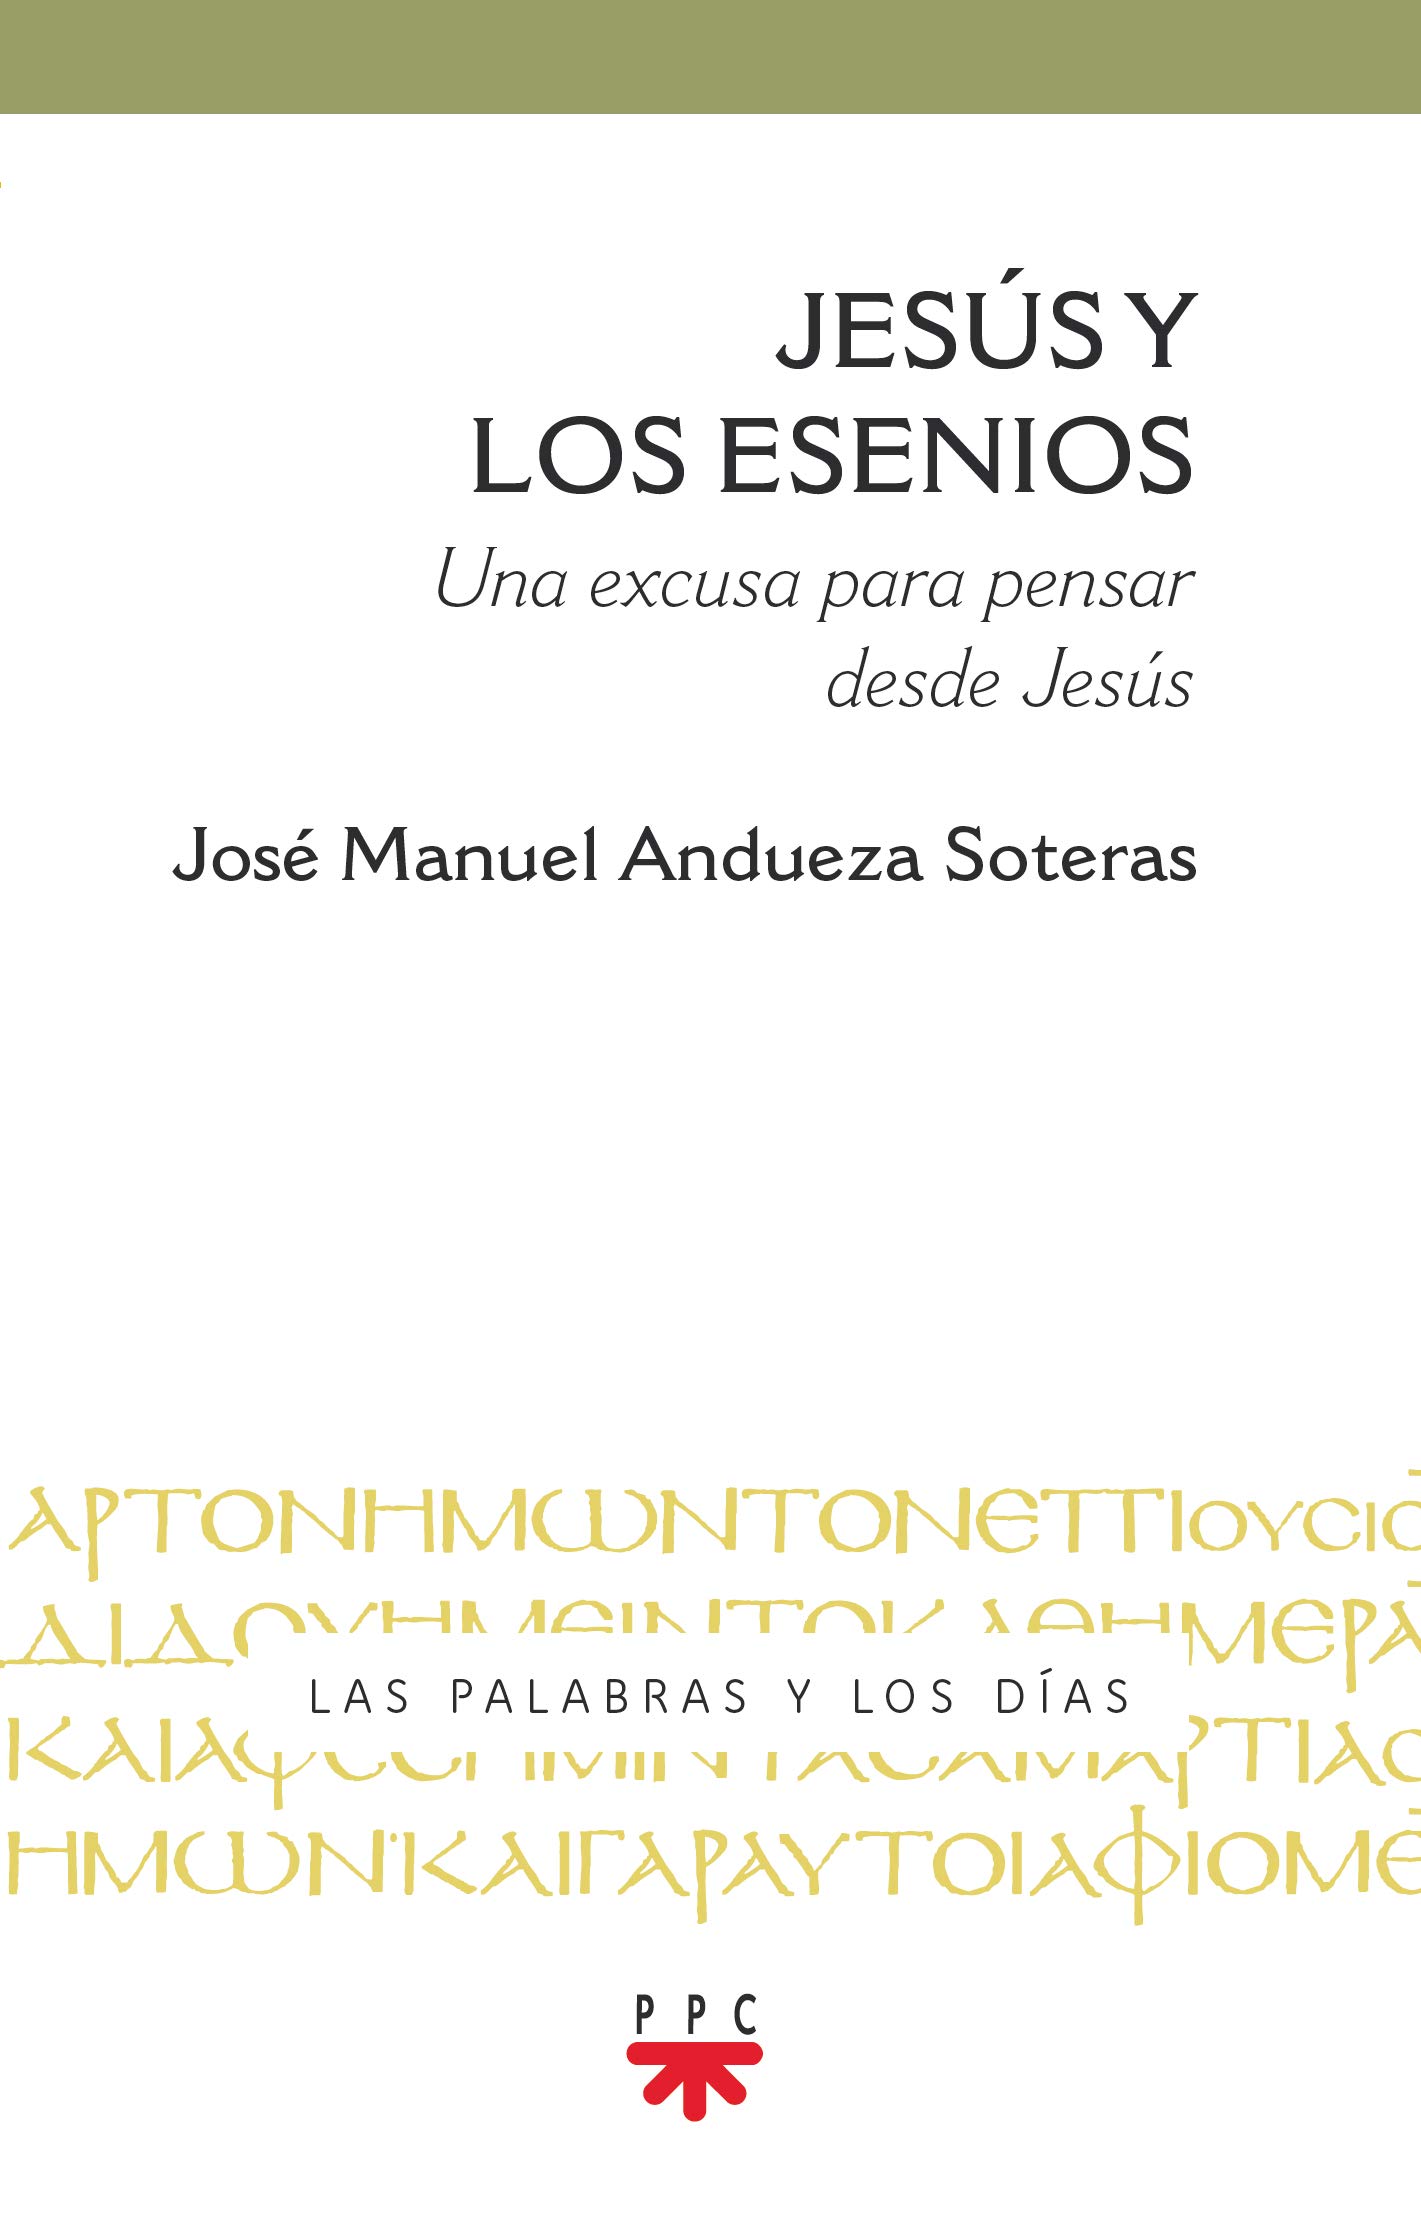 Imagen de portada del libro Jesús y los esenios